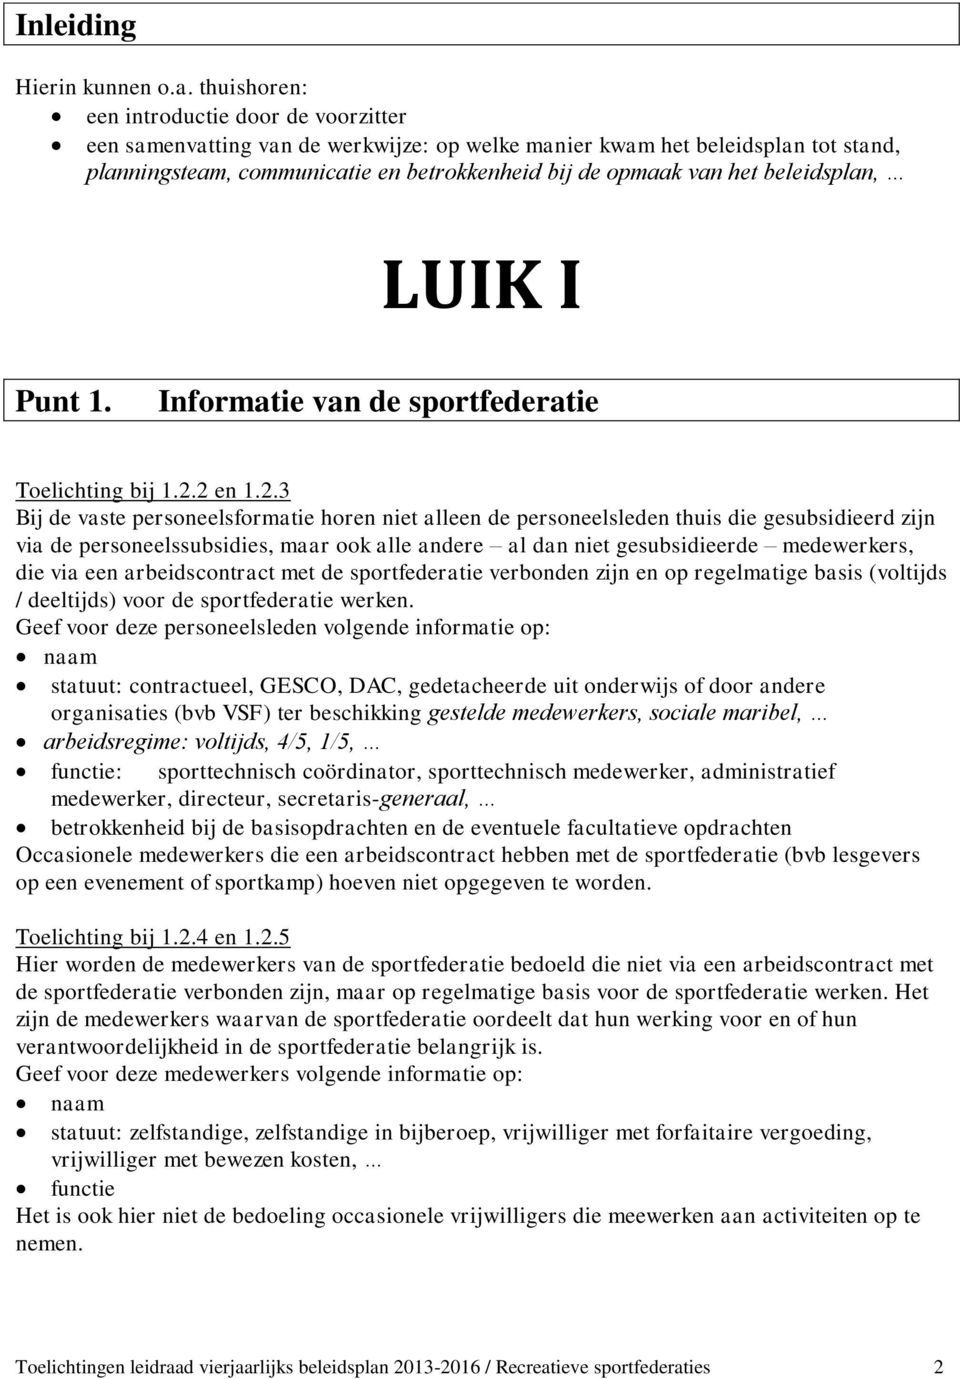 beleidsplan, LUIK I Punt 1. Informatie van de sportfederatie Toelichting bij 1.2.